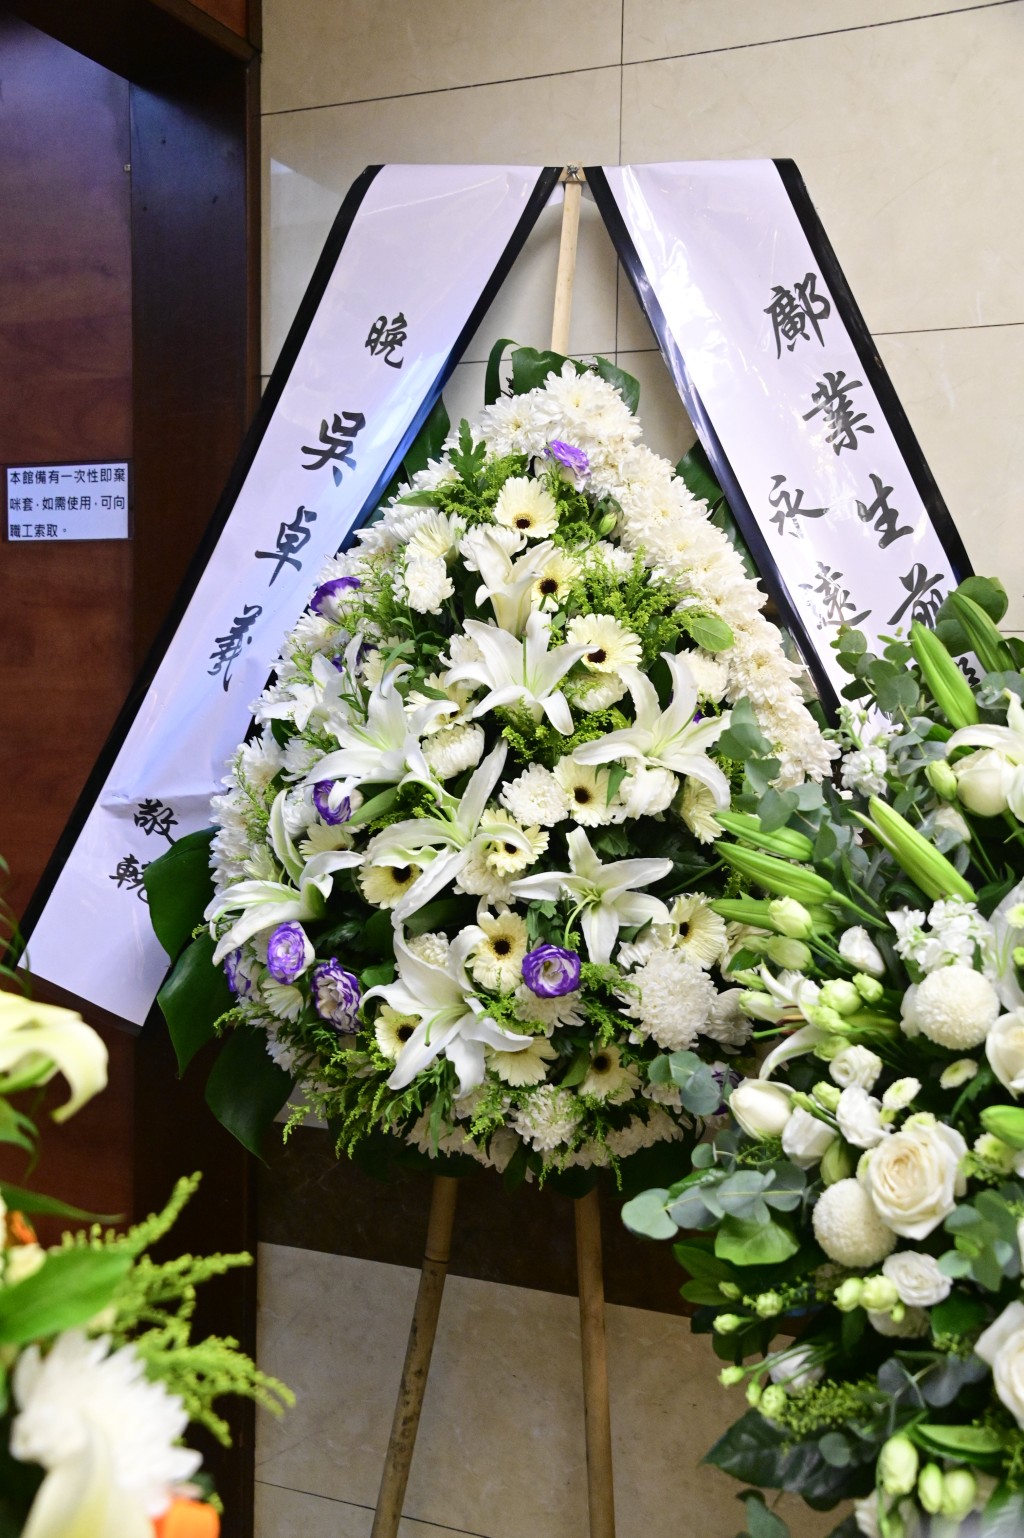 吴卓羲致送花牌悼念。